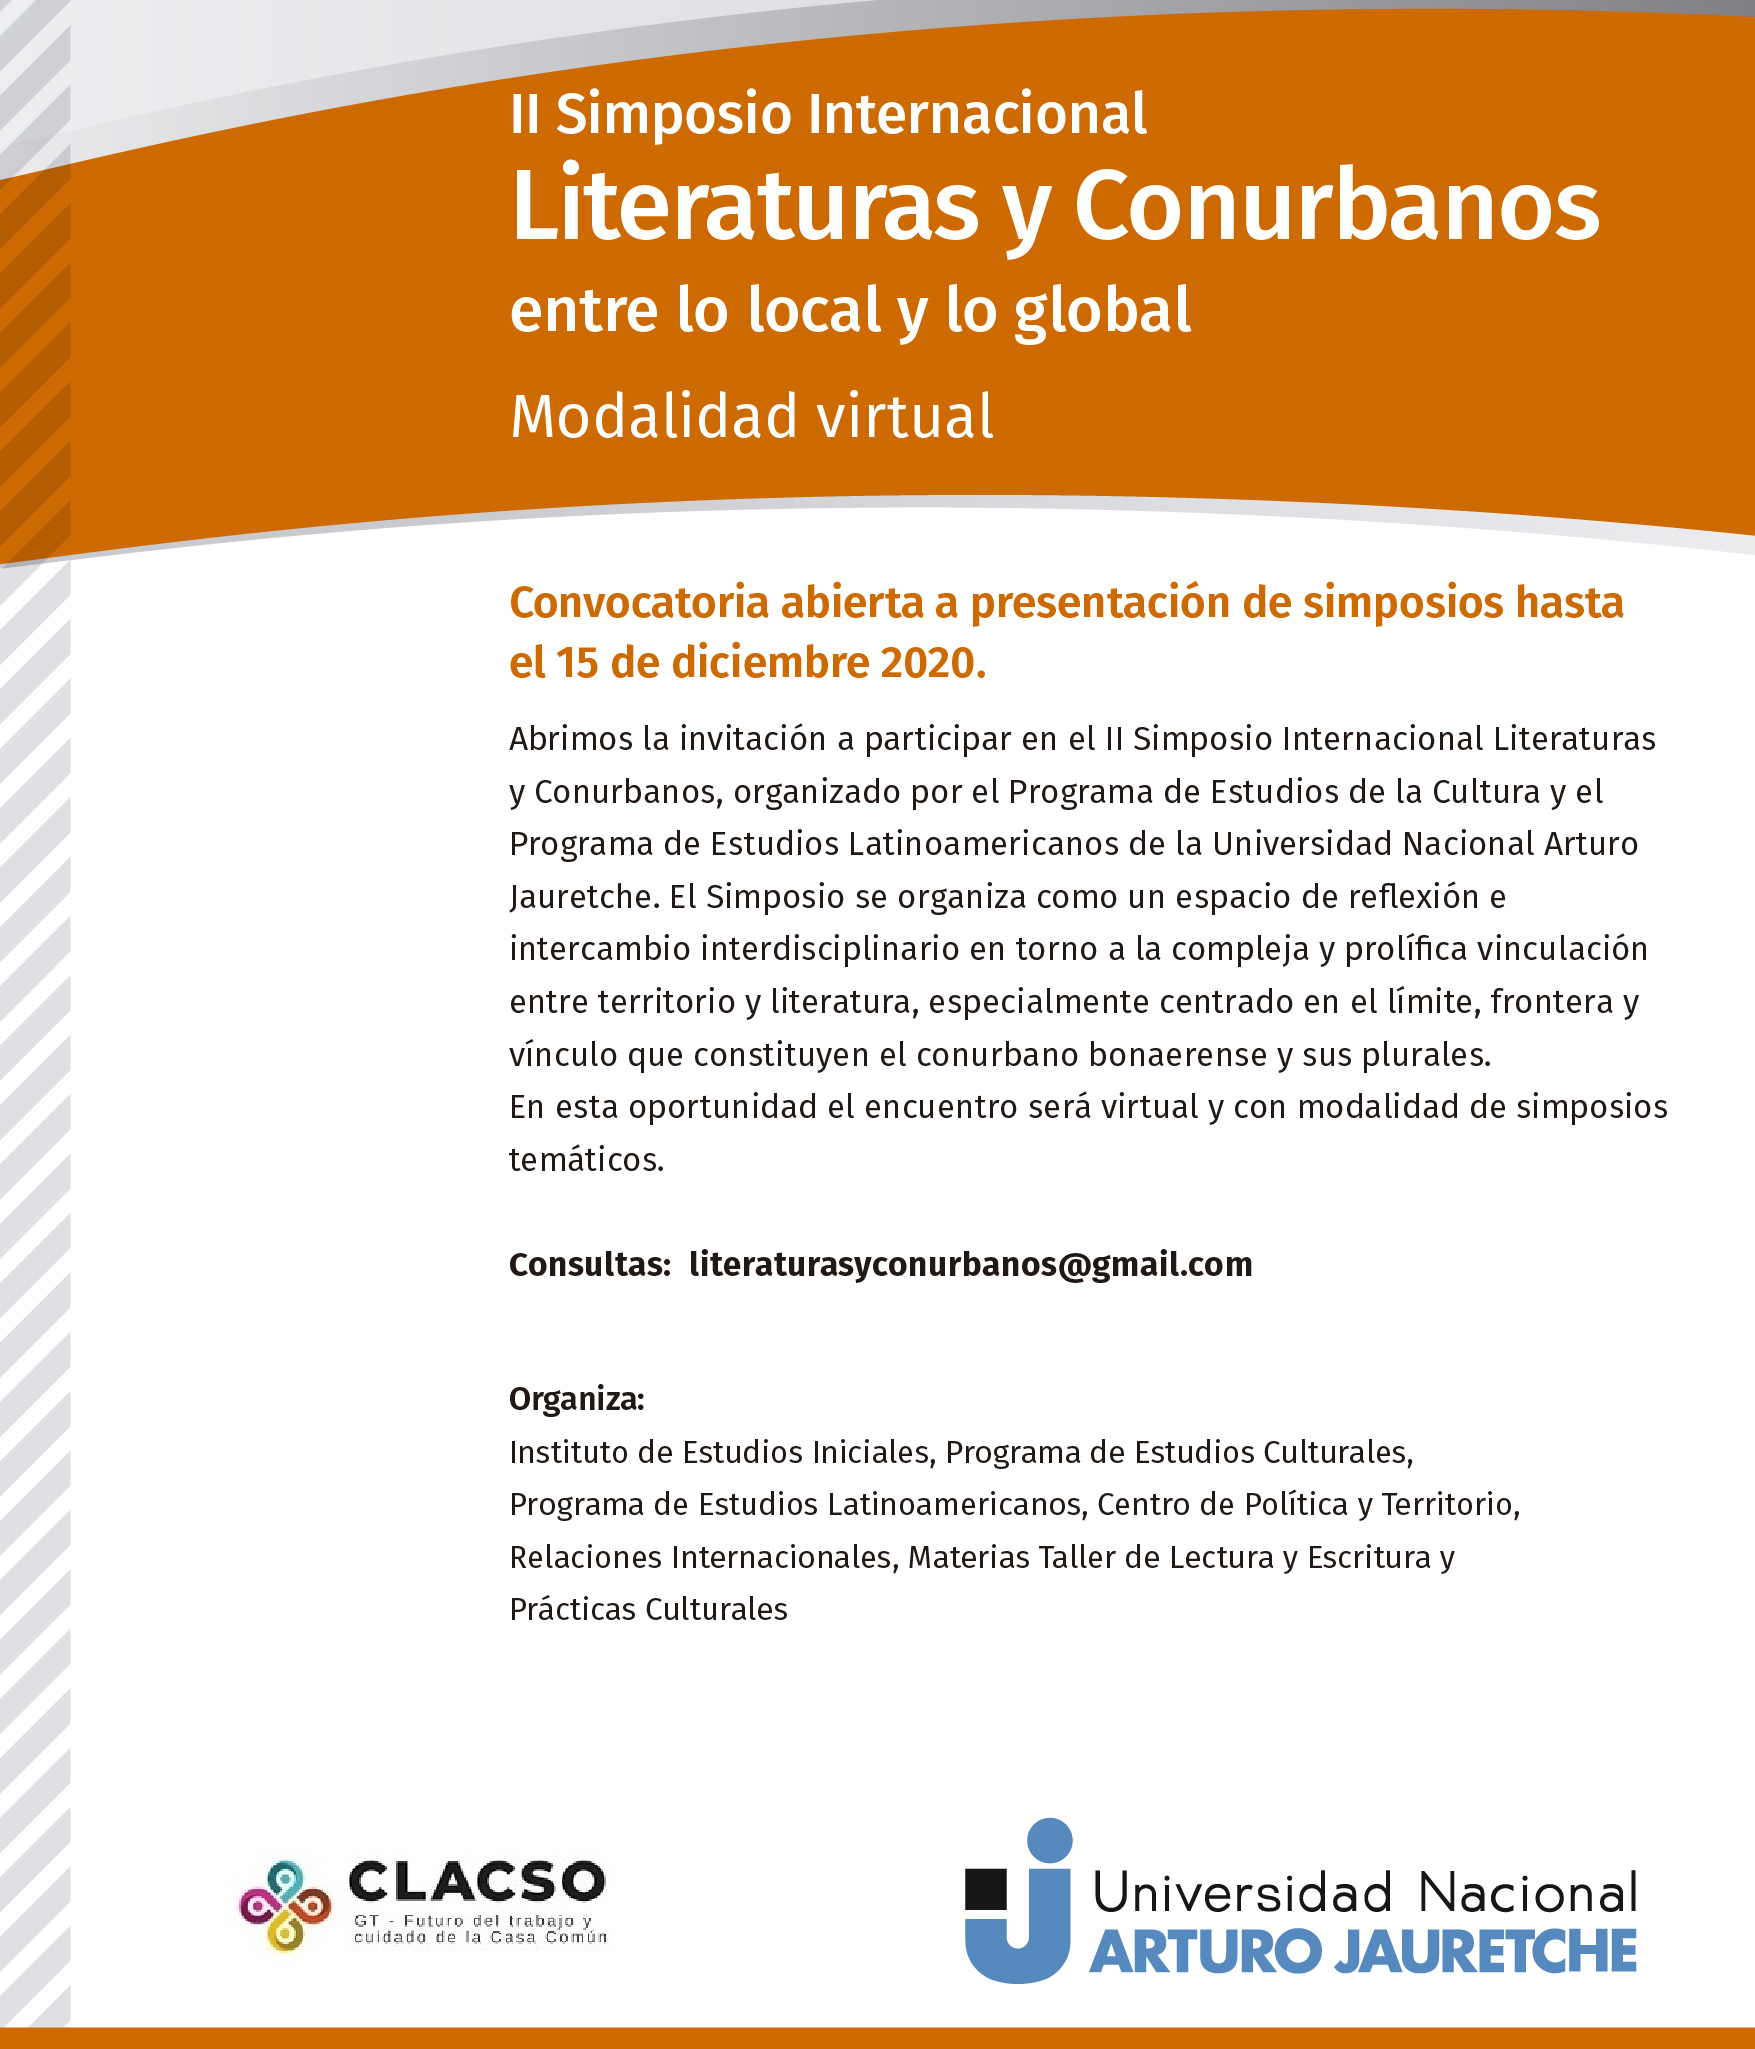 II Simposio Internacional Literaturas y Conurbanos entre lo local y lo global modalidad virtual